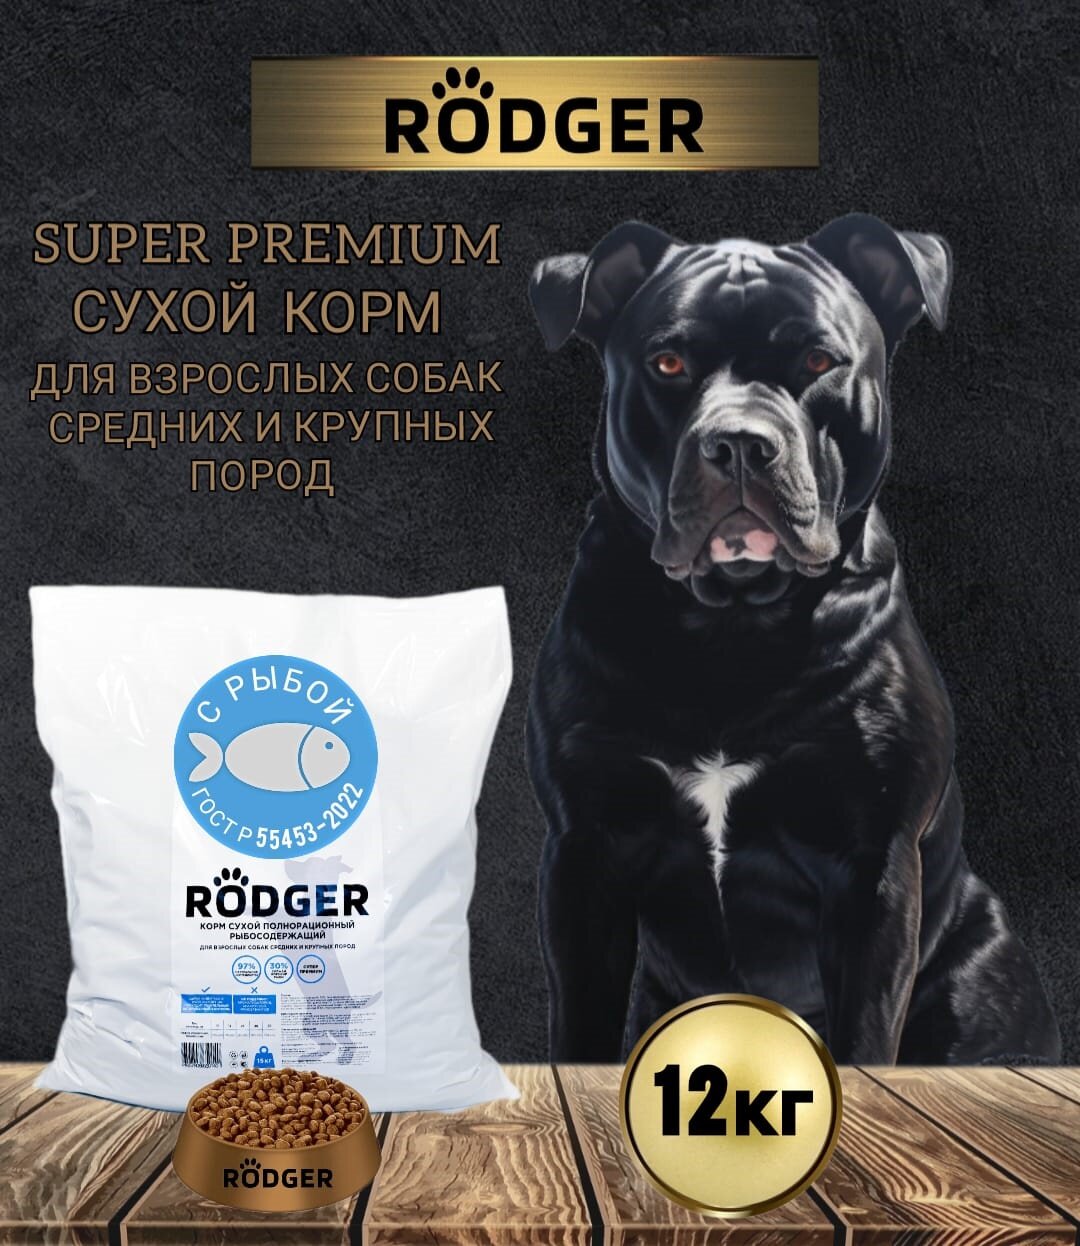 RODGER Сухой Корм SUPER PREMIUM, для собак средних и крупных пород, рыба 12кг